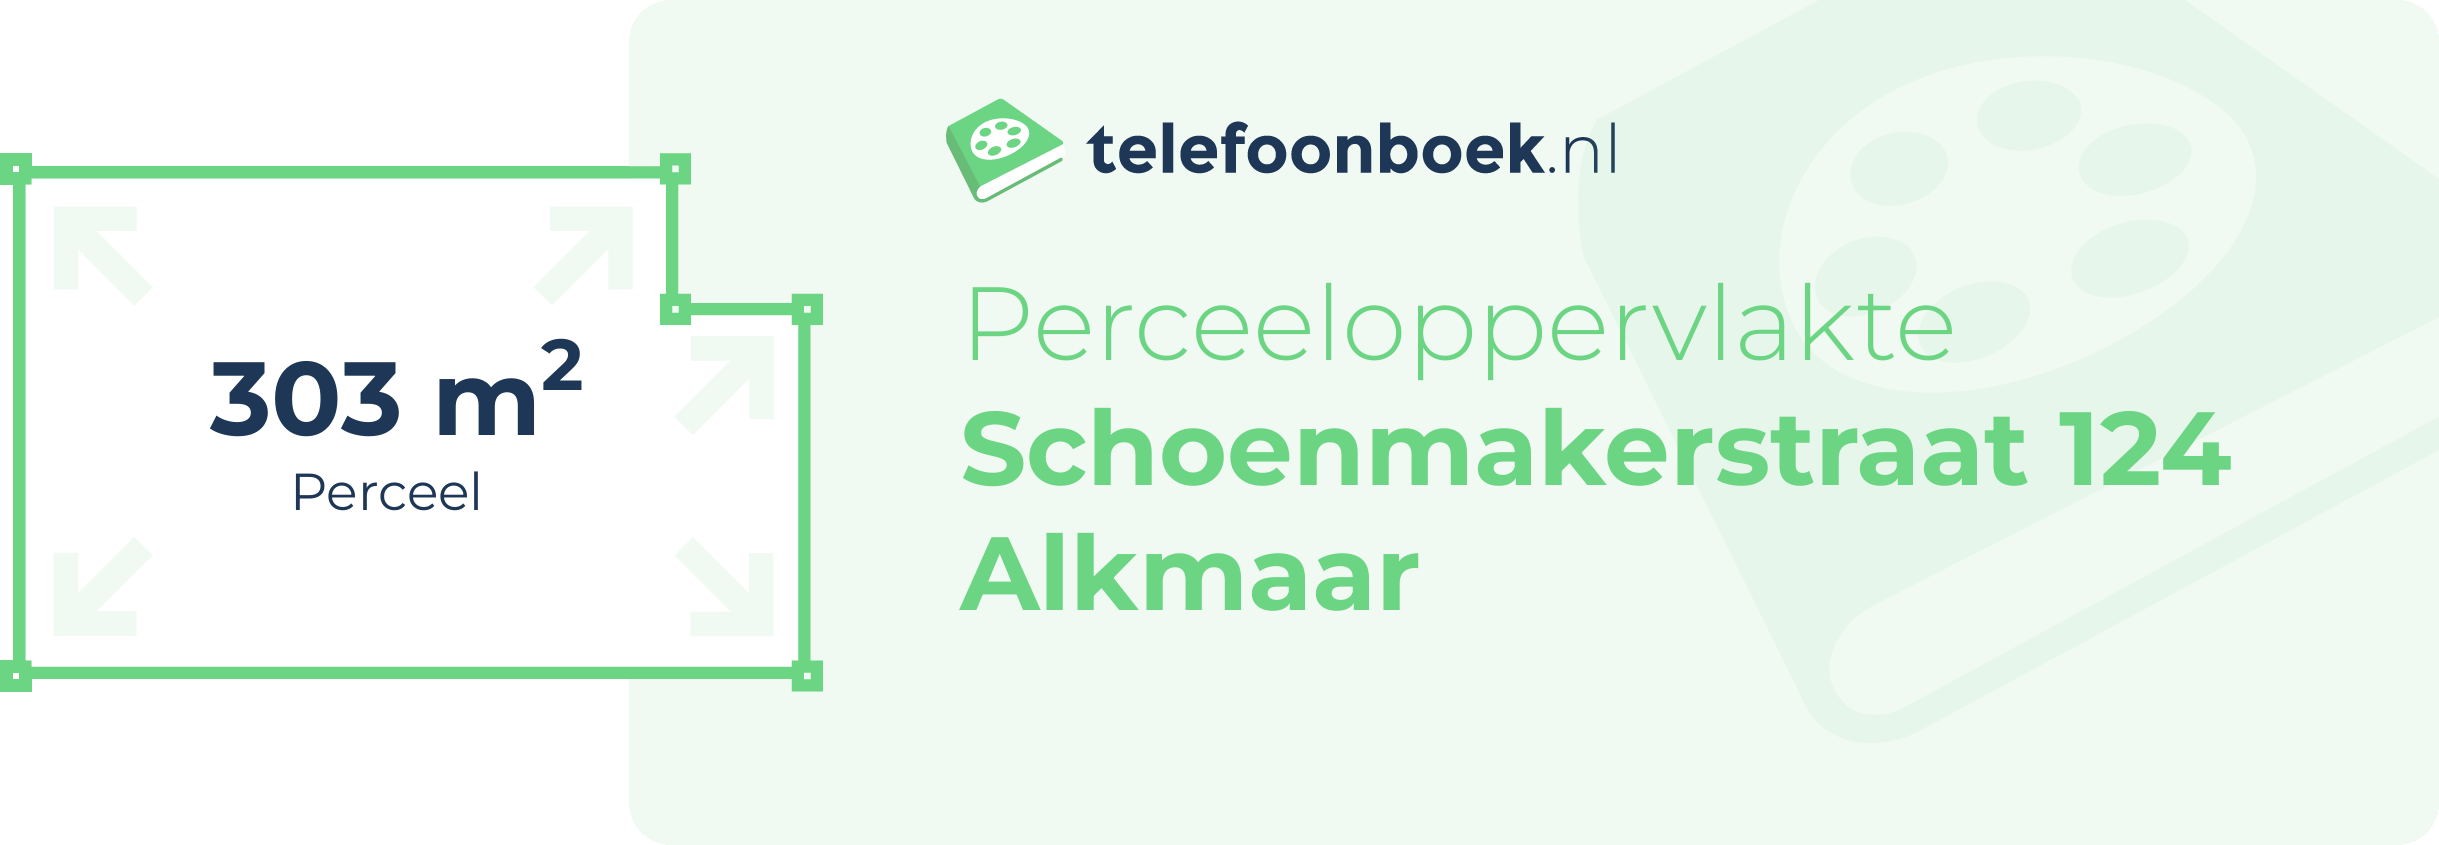 Perceeloppervlakte Schoenmakerstraat 124 Alkmaar